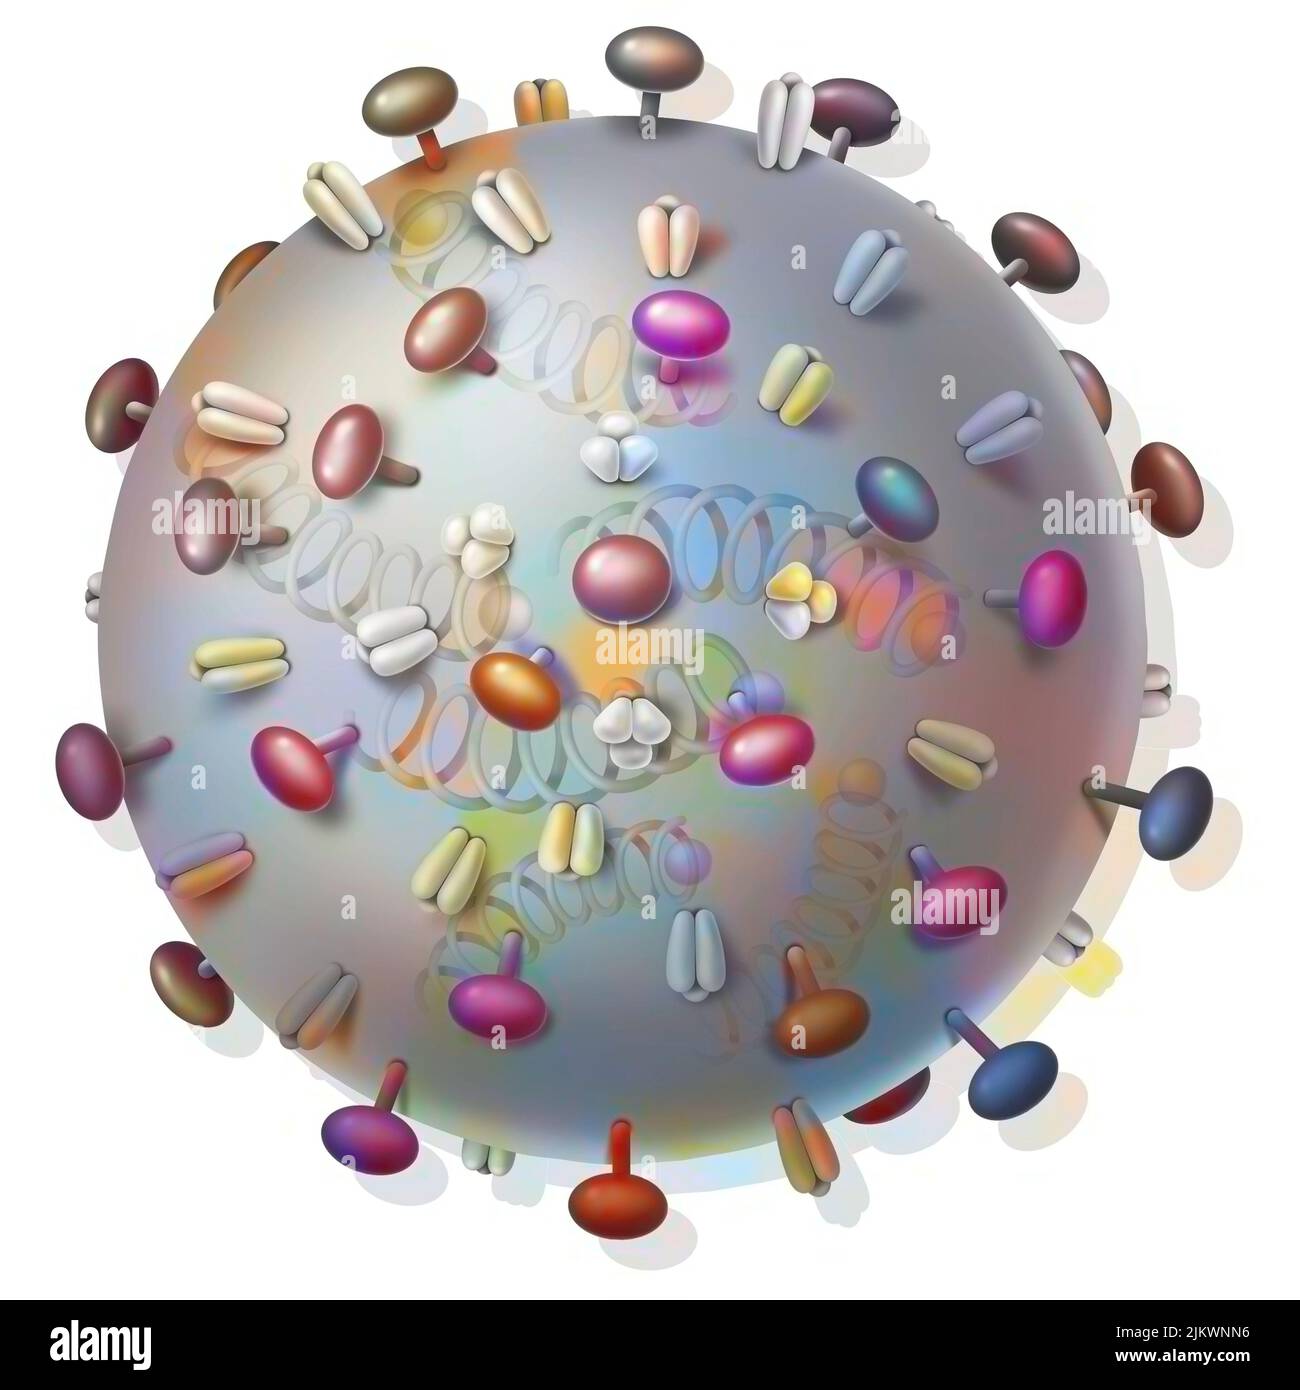 Virus influenzali e proteine che si legano alle cellule ospiti. Foto Stock